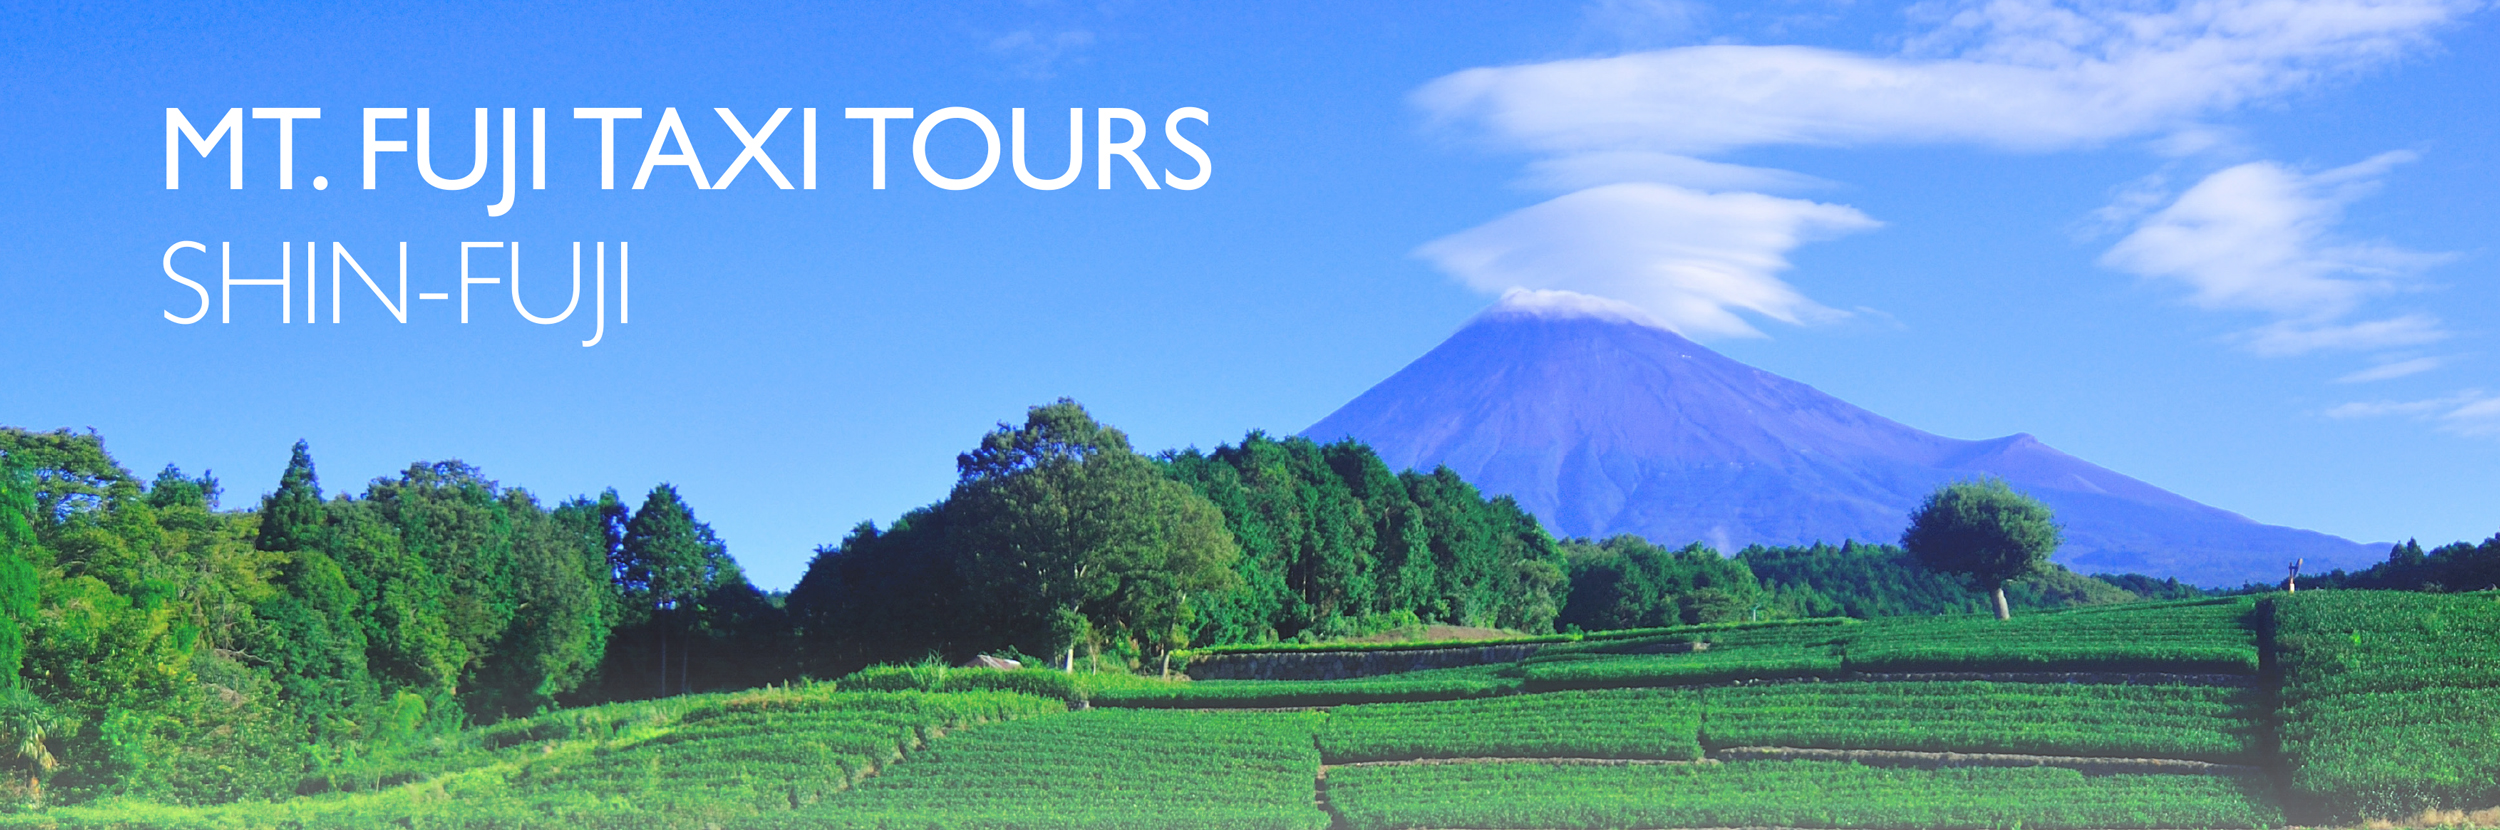 Mt Fuji Taxi Tours